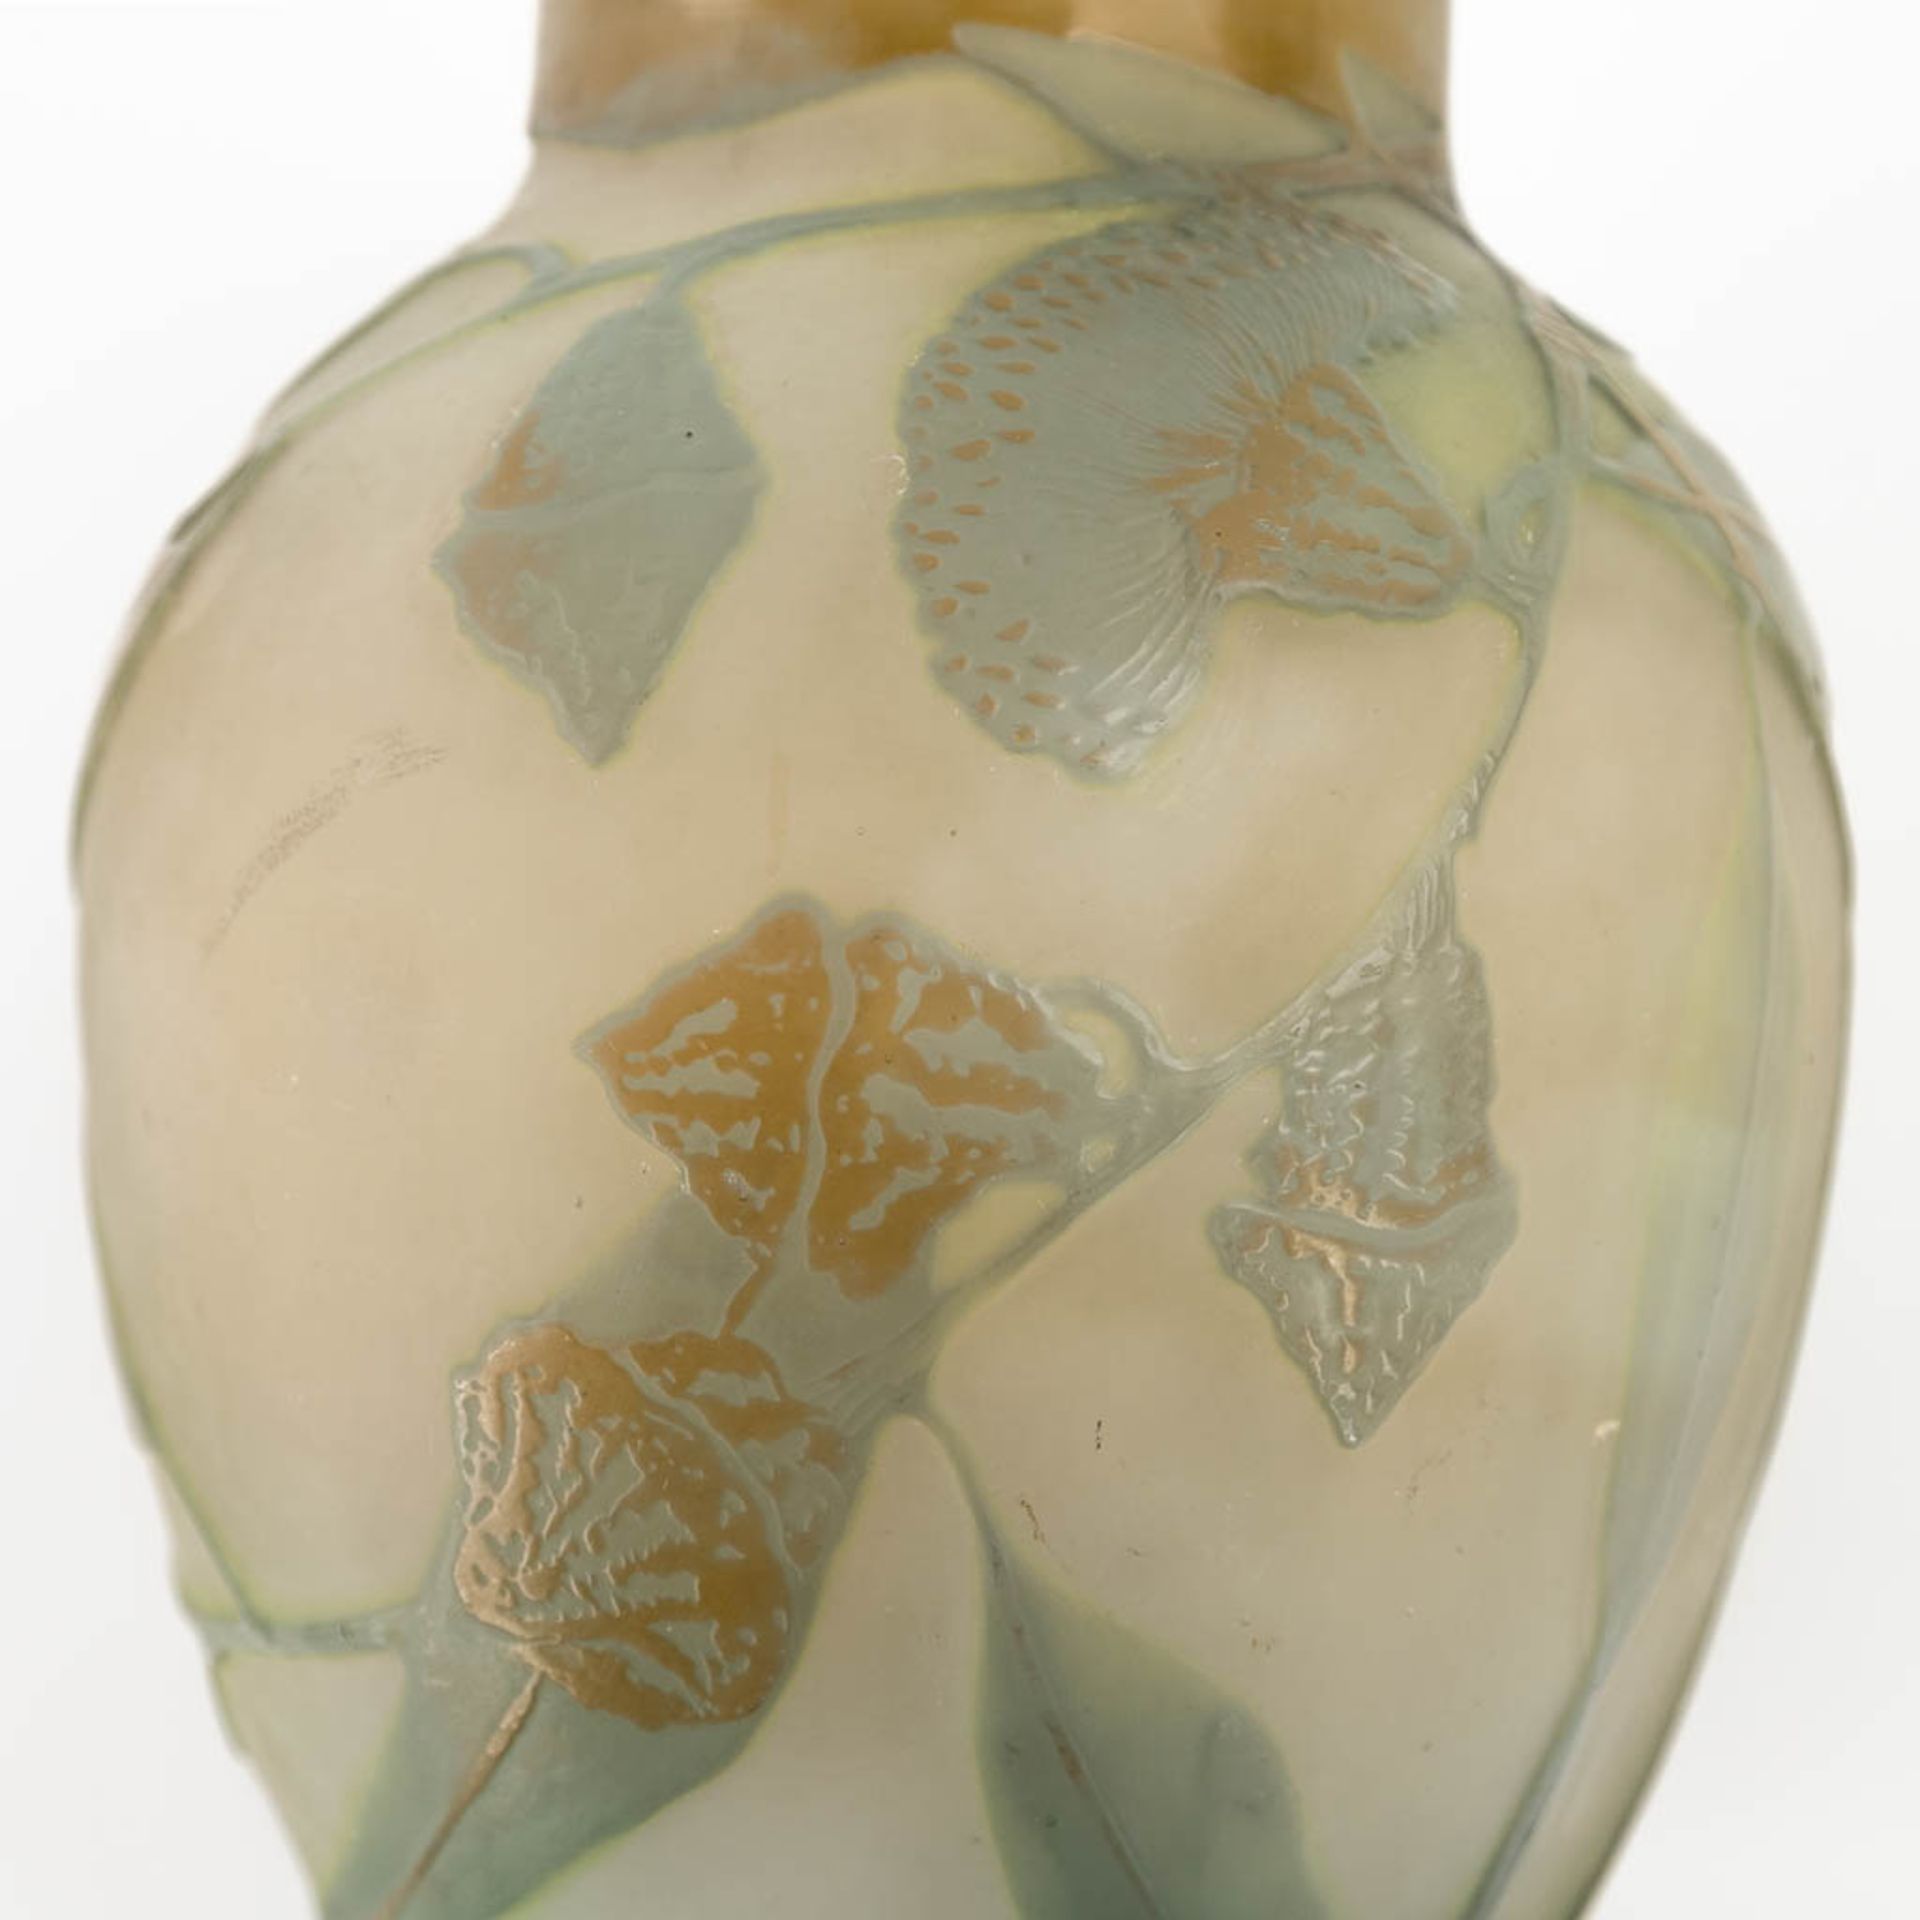 Emile GALLE (1846-1904) 'Vase' pate de verre glass. Circa 1905-1908. (H:18 x D:13 cm) - Bild 10 aus 10